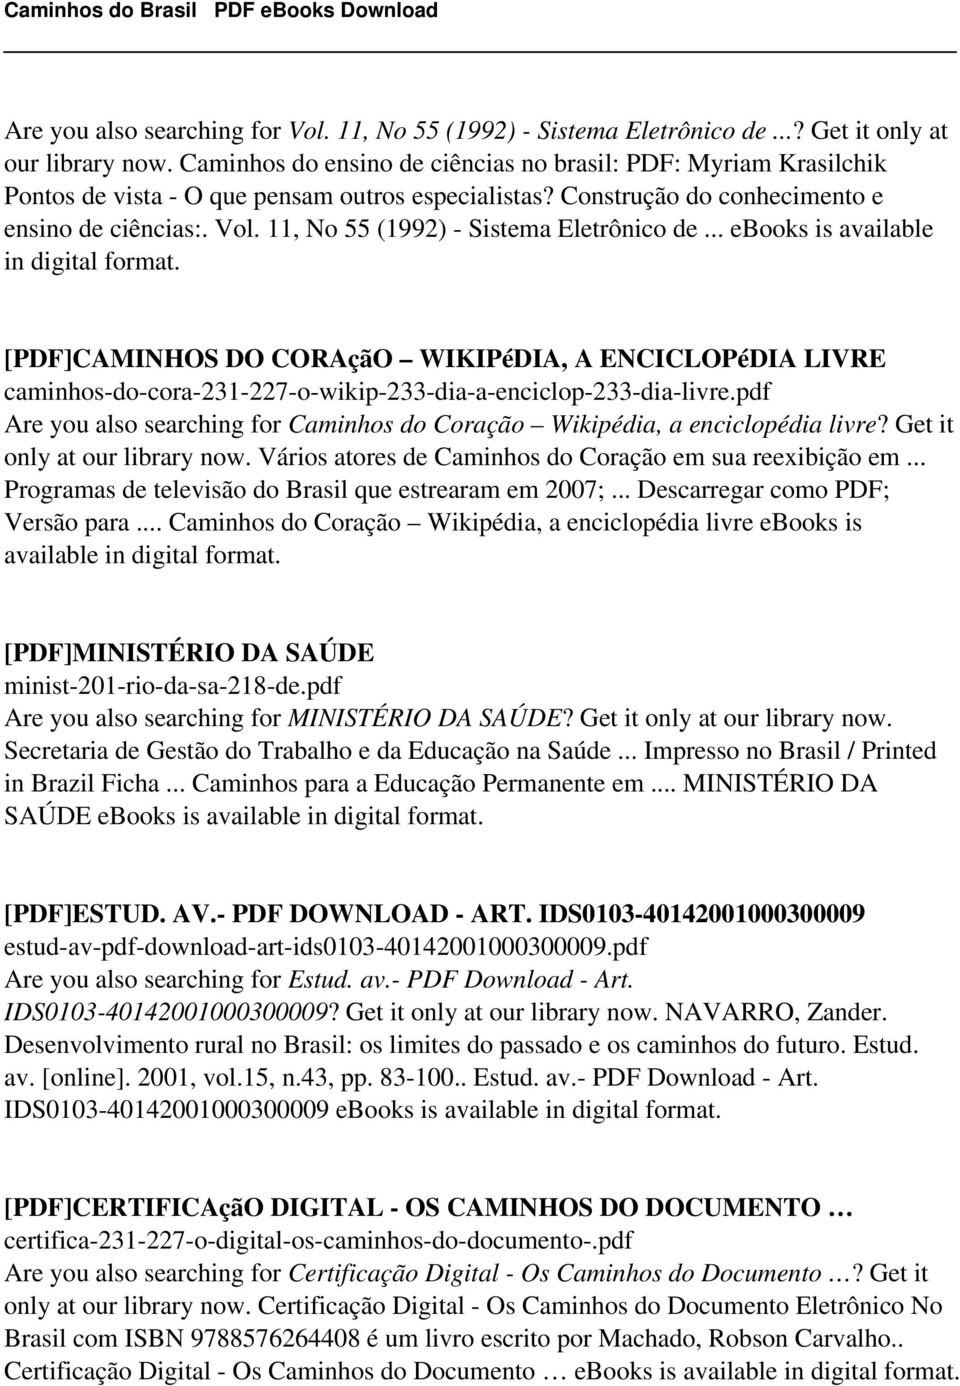 11, No 55 (1992) - Sistema Eletrônico de... ebooks is available in digital format.